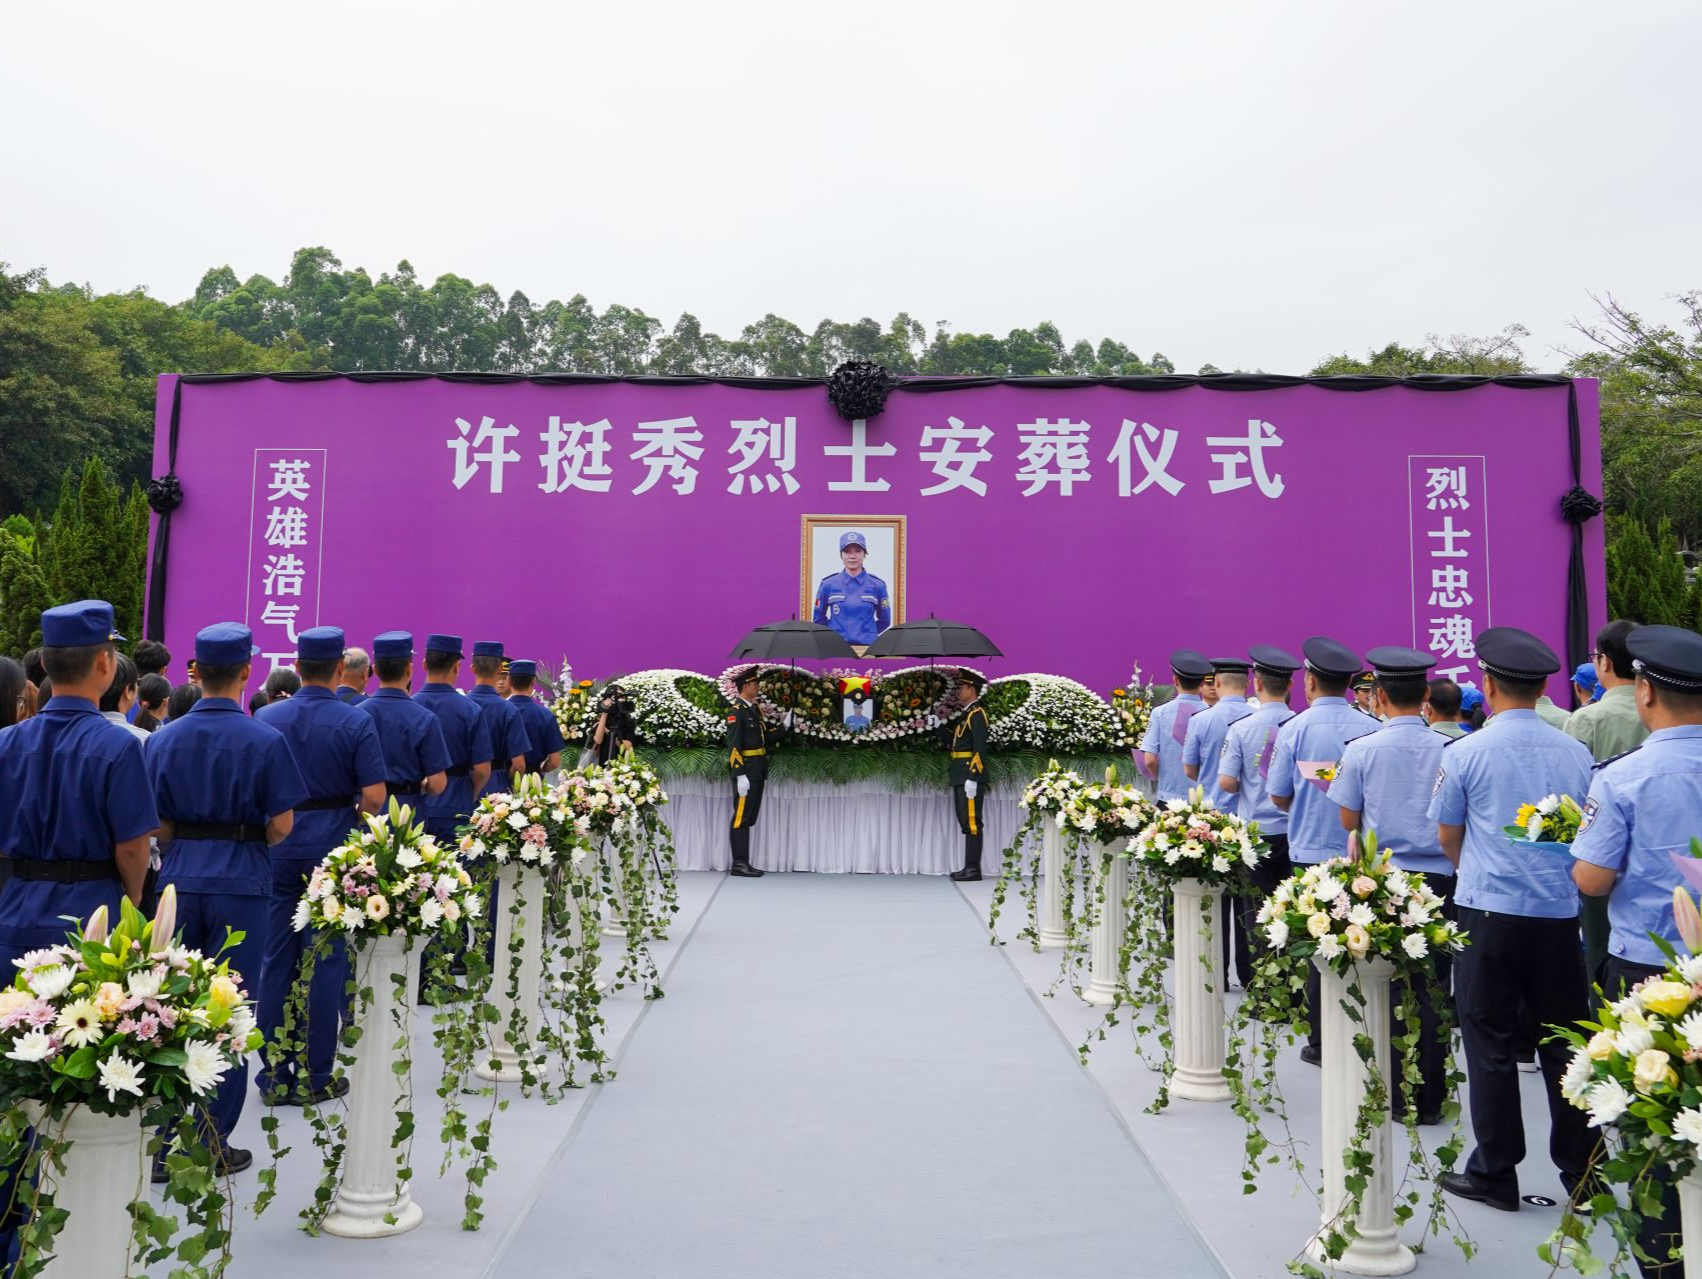 许挺秀烈士安葬仪式在深圳龙岗举行